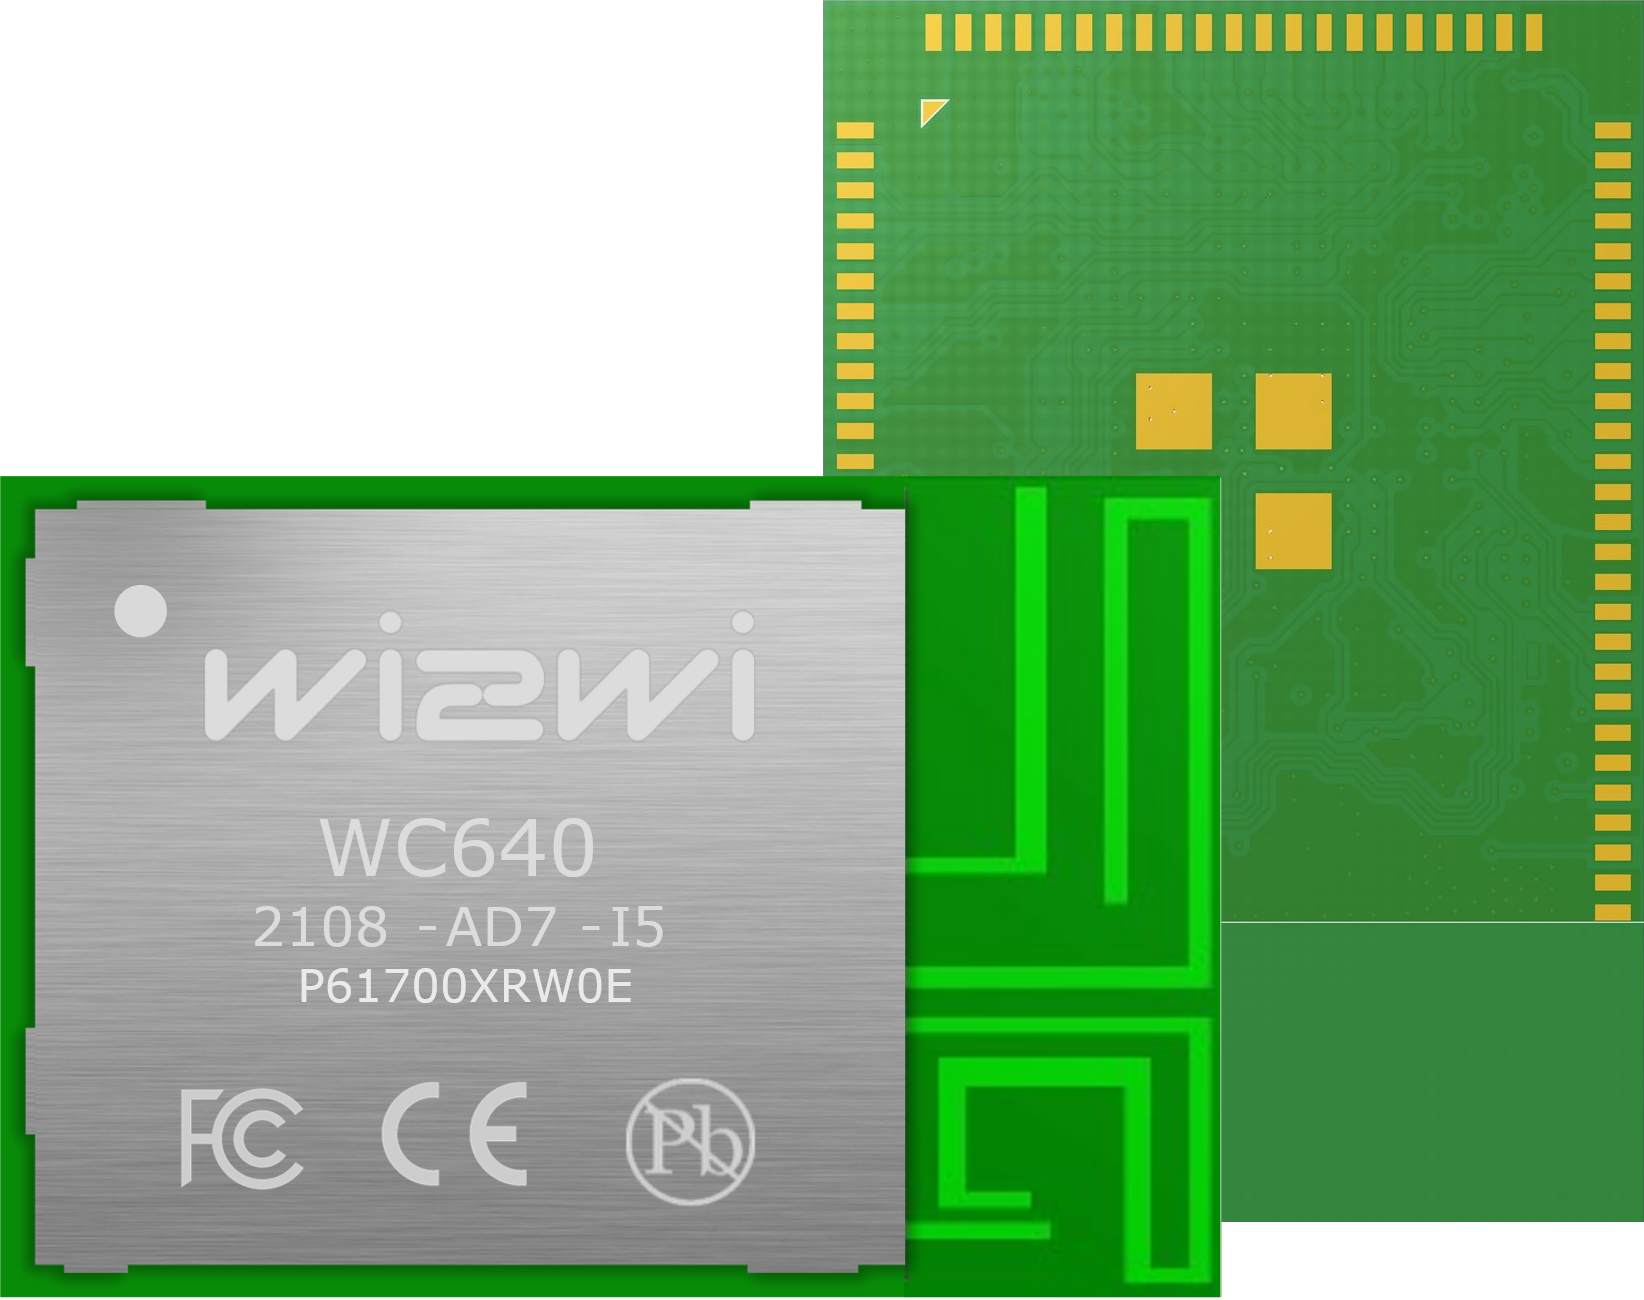 MCU Embedded Wi-Fi a/b/g/n + Bluetooth 5.0 + 802.15.4 Module